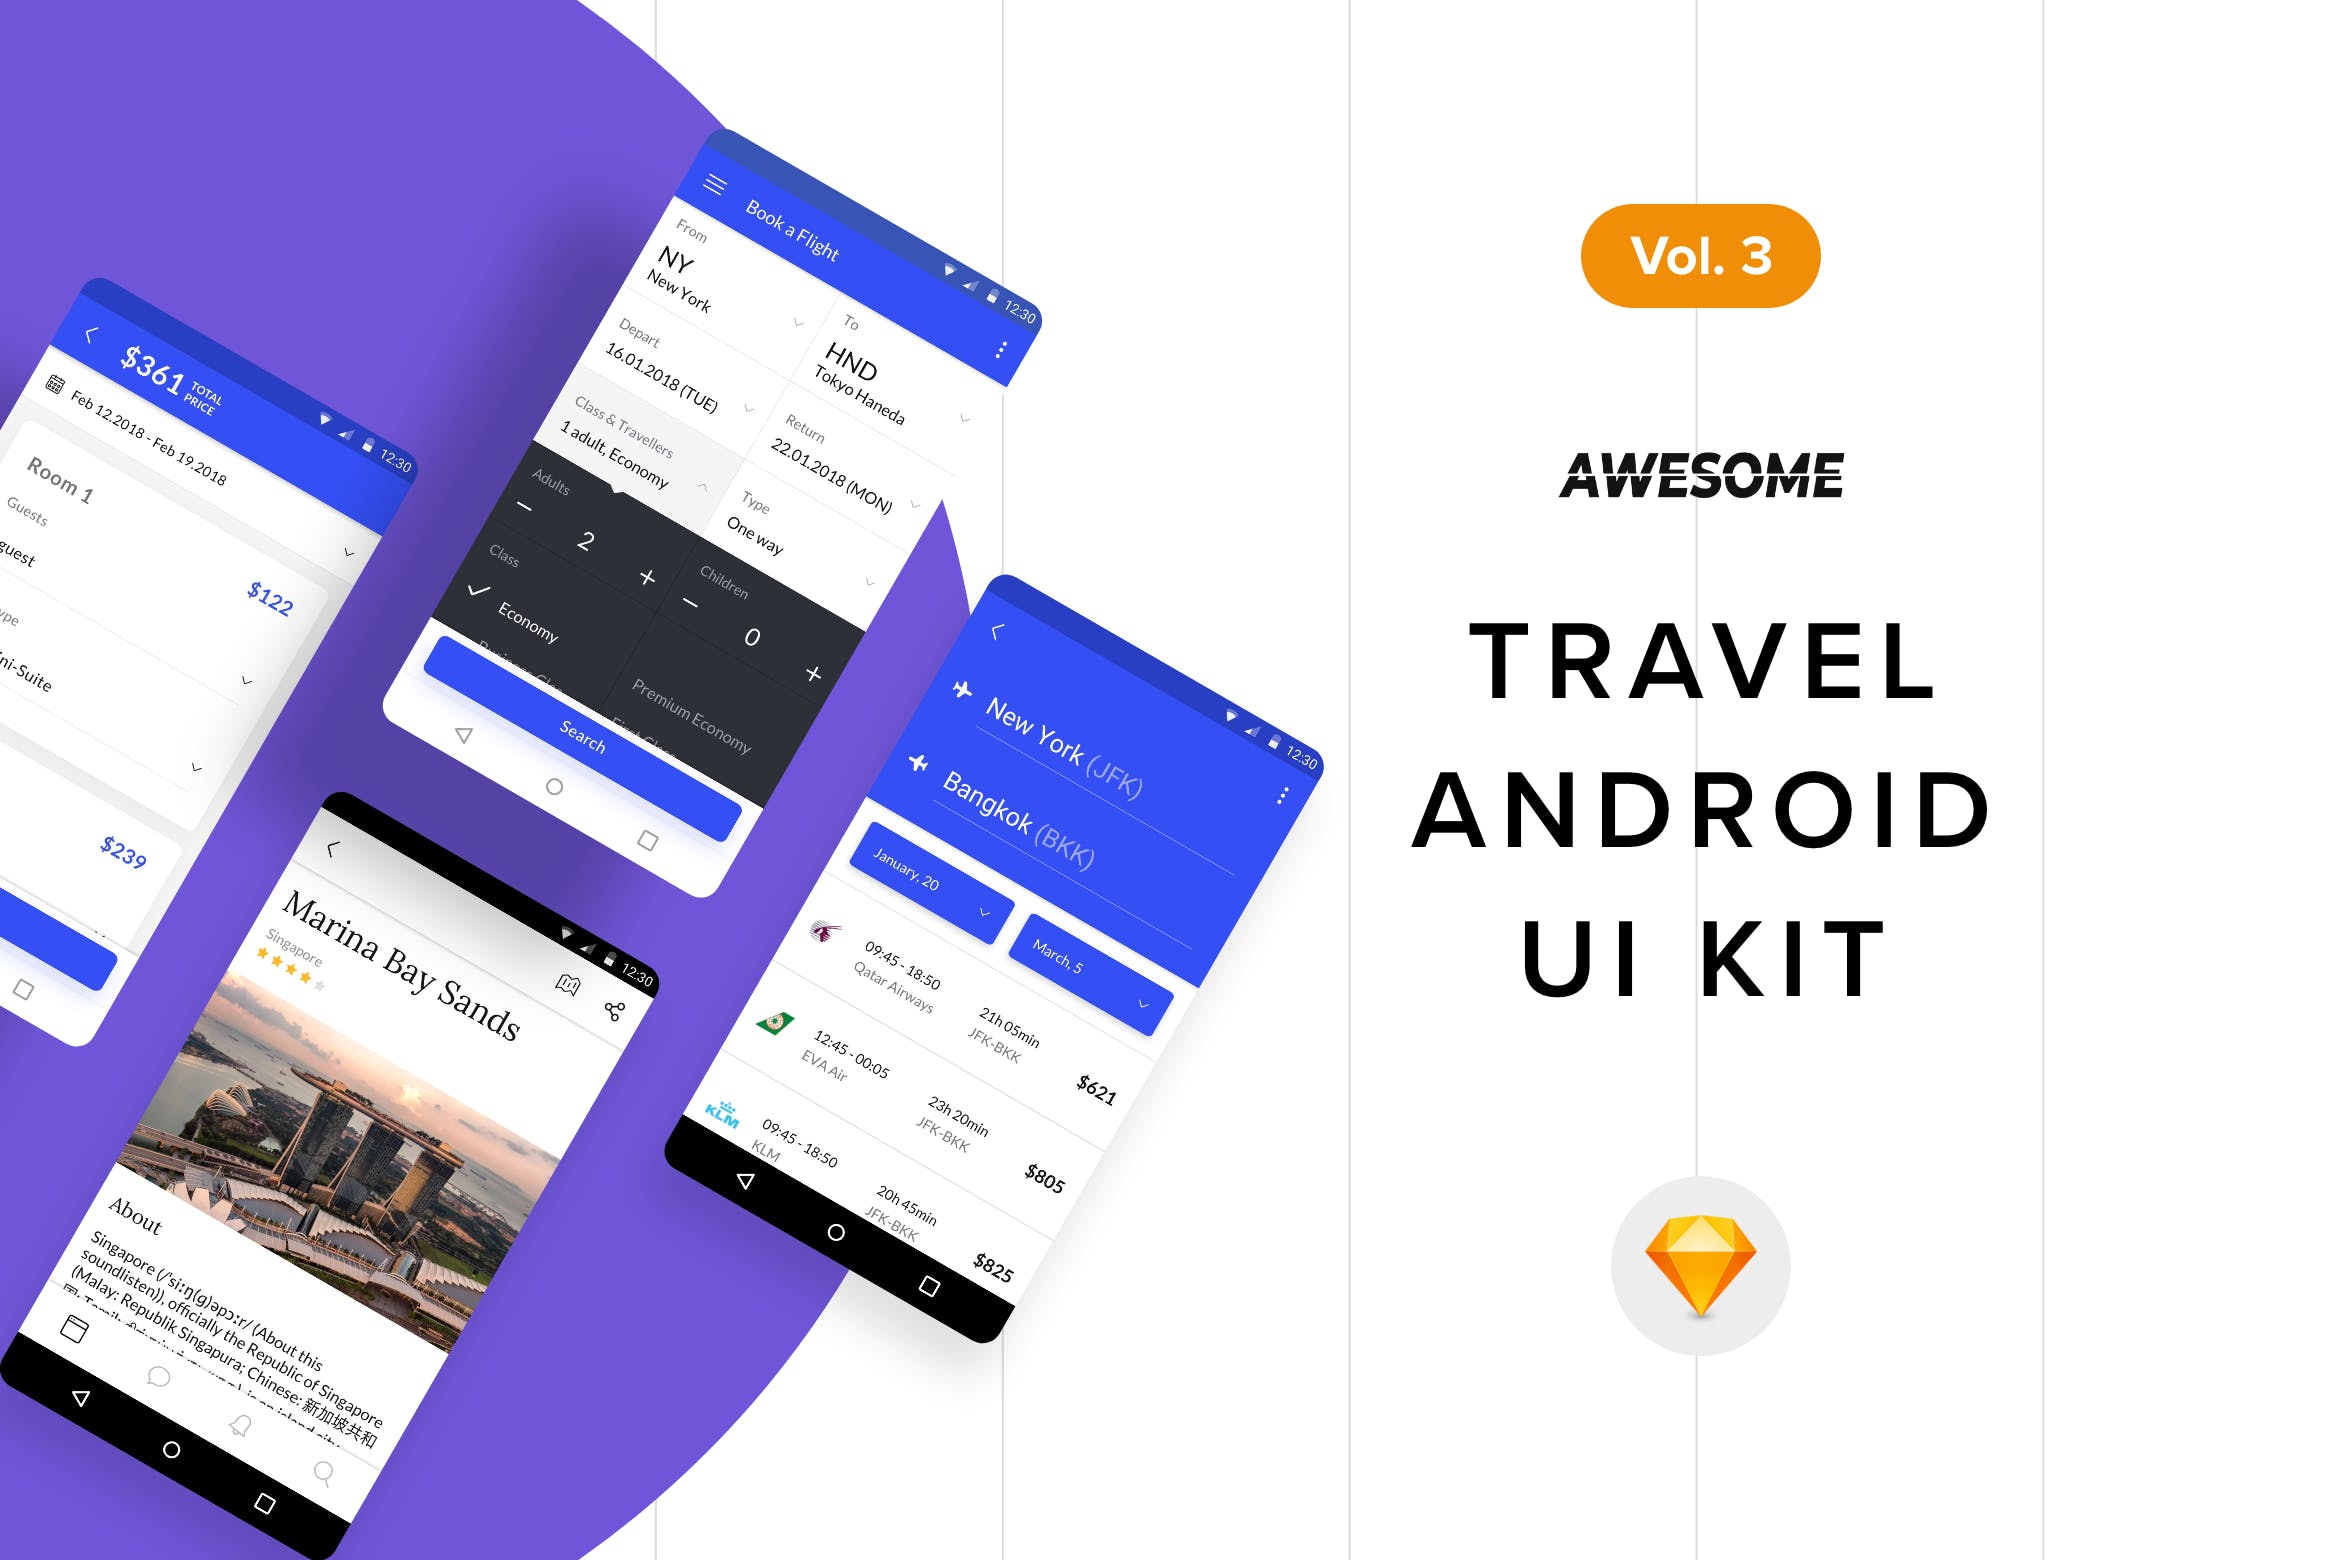 安卓平台旅游APP应用用户交互界面设计SKETCH模板v3 Android UI Kit – Travel Vol. 3 (Sketch)插图